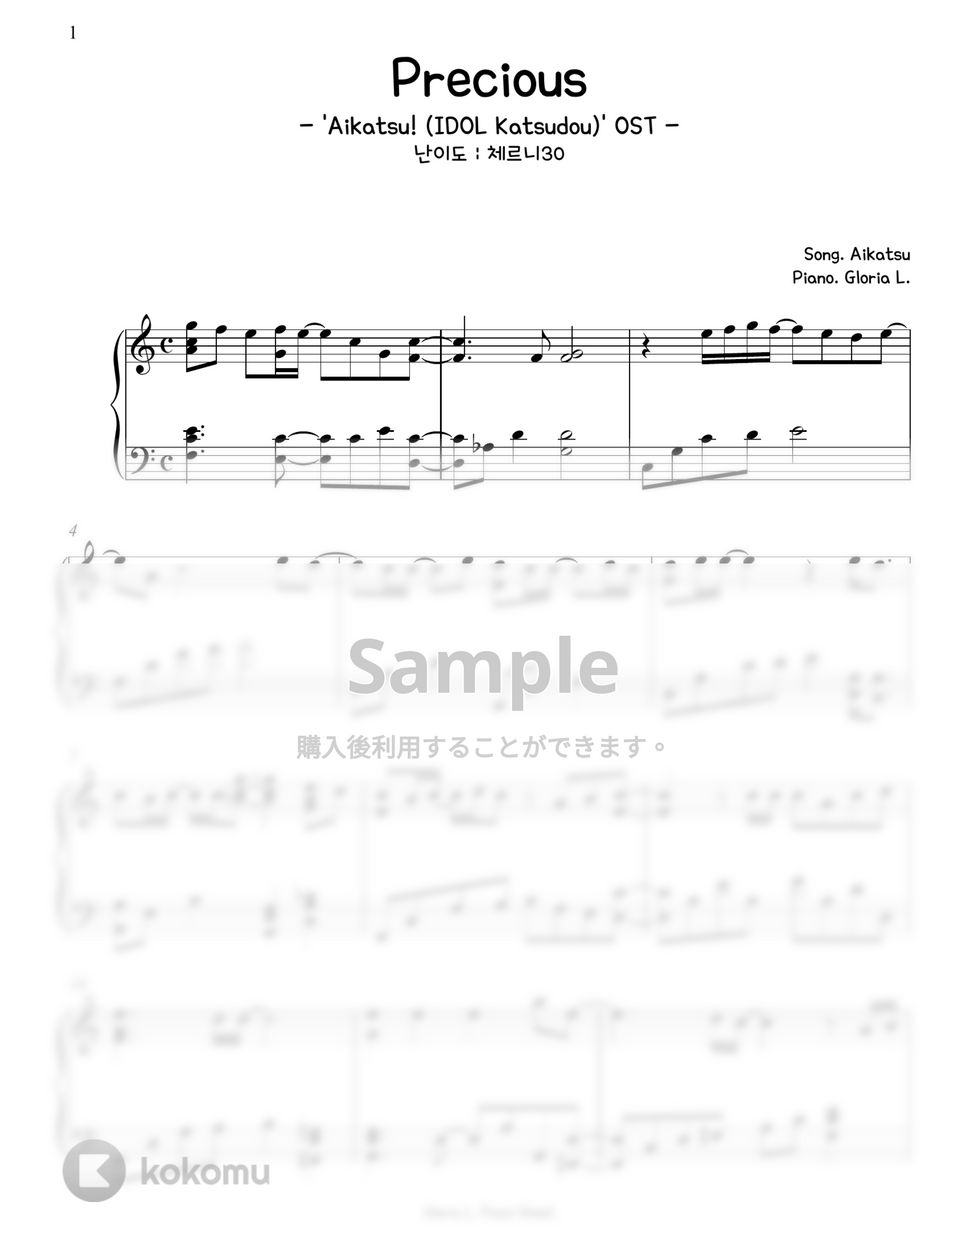 アイカツ - Precious ('Aikatsu! -IDOL Katsudou-' OST) (難易度:チェルニー30) by Gloria L.